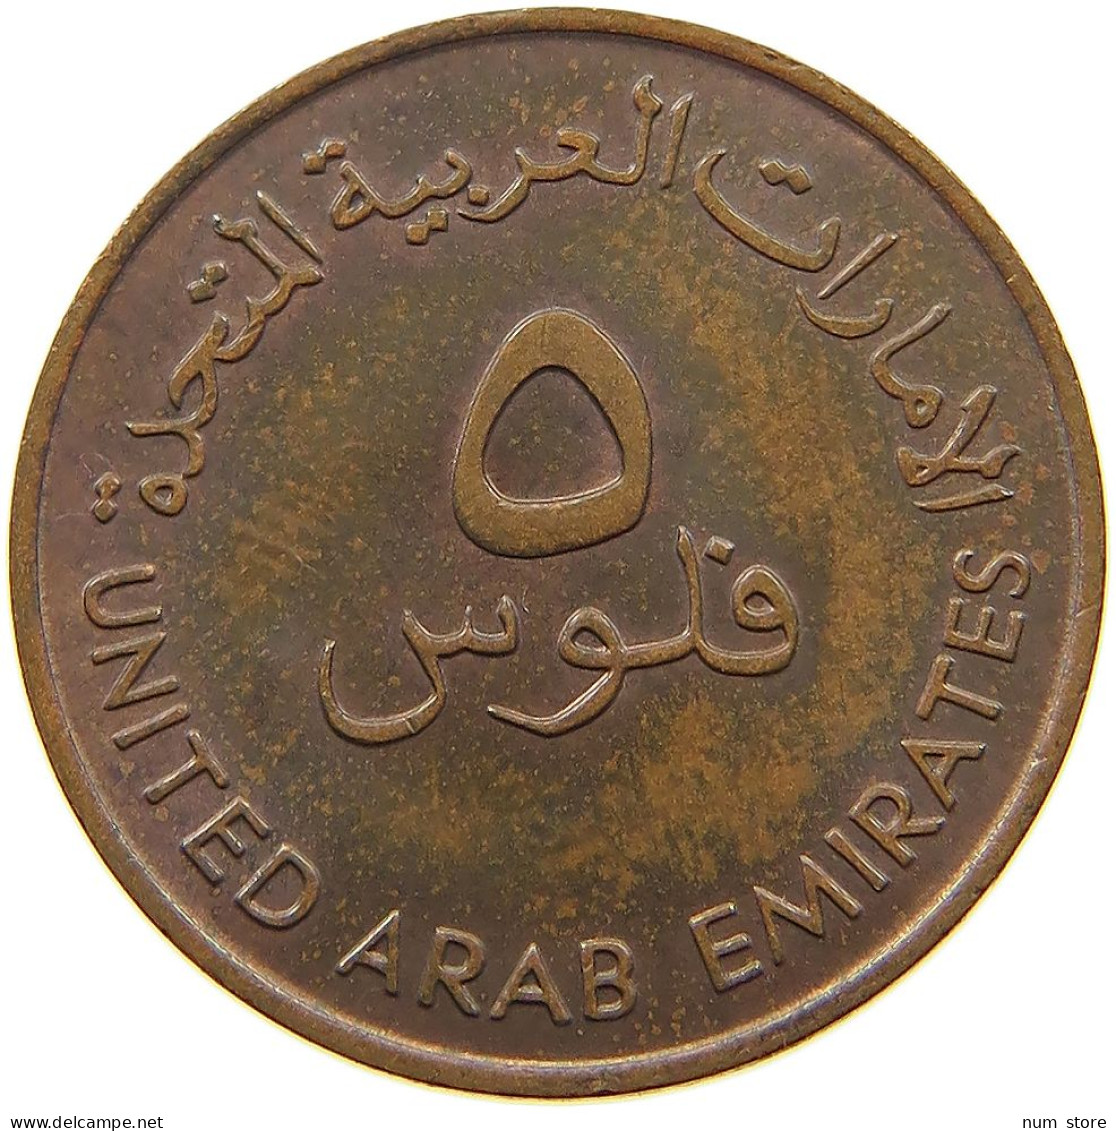 UNITED ARAB EMIRATES 5 FILS 1973  #a016 0305 - Emirats Arabes Unis